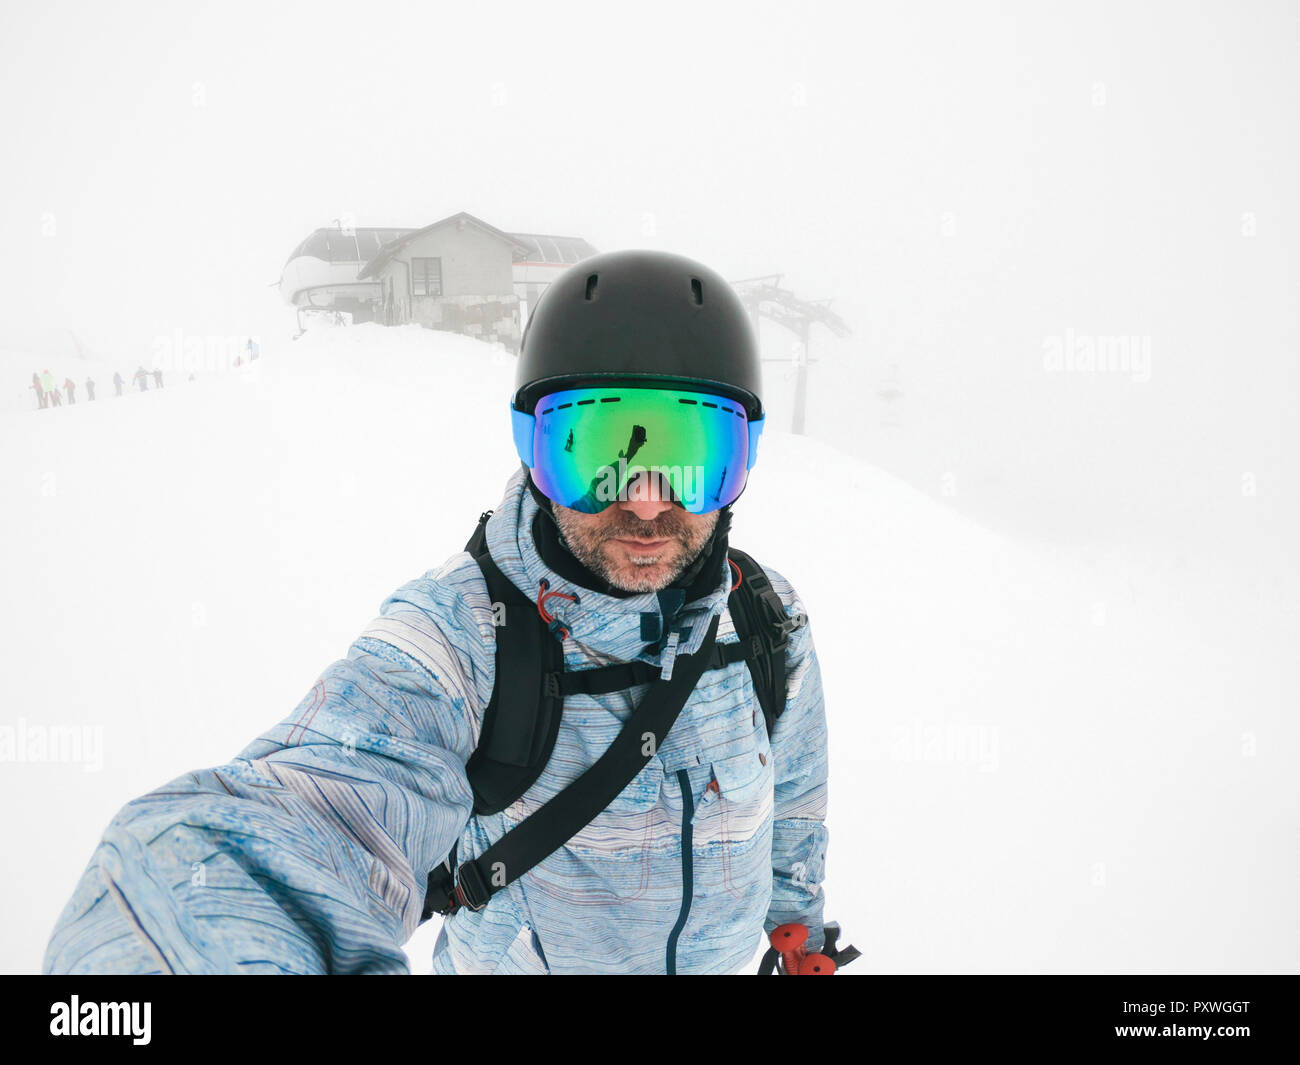 L'Italie, Modena, Cimone, portrait d'un homme portant des lunettes de ski et le casque dans la brume sèche Banque D'Images